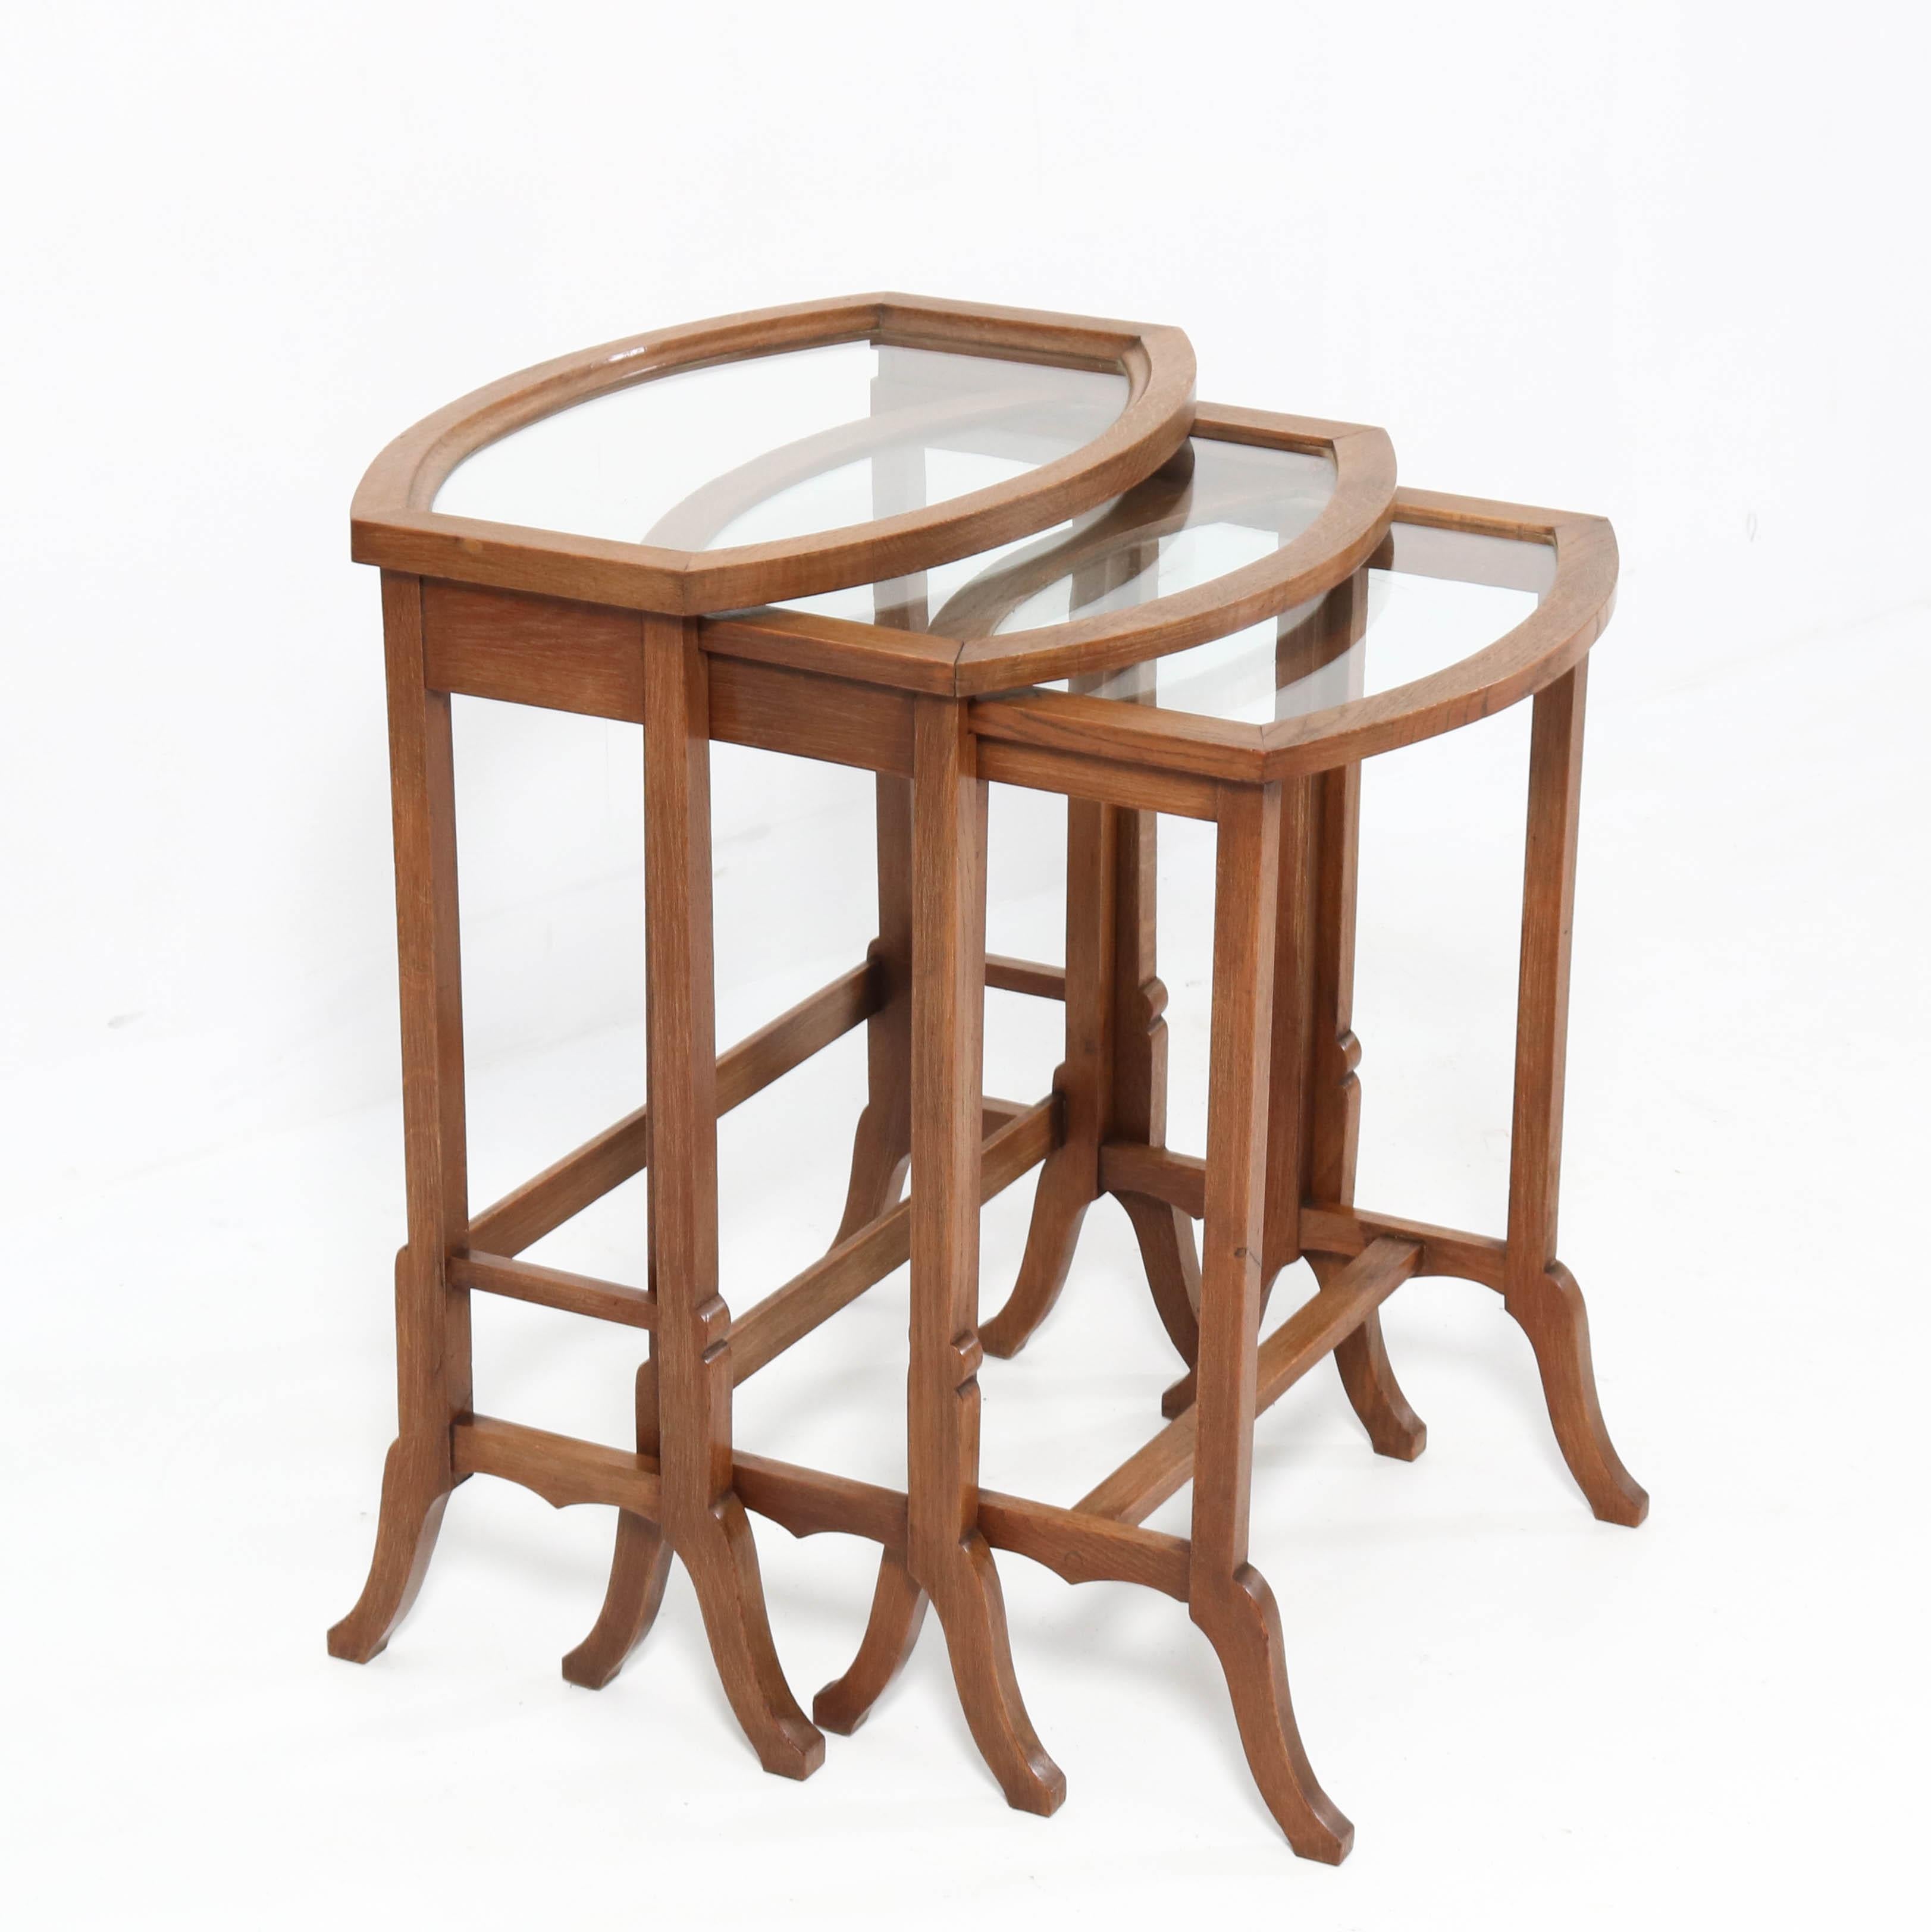 Dutch Oak Art Nouveau Nesting Tables with Glass Tops, 1900s For Sale